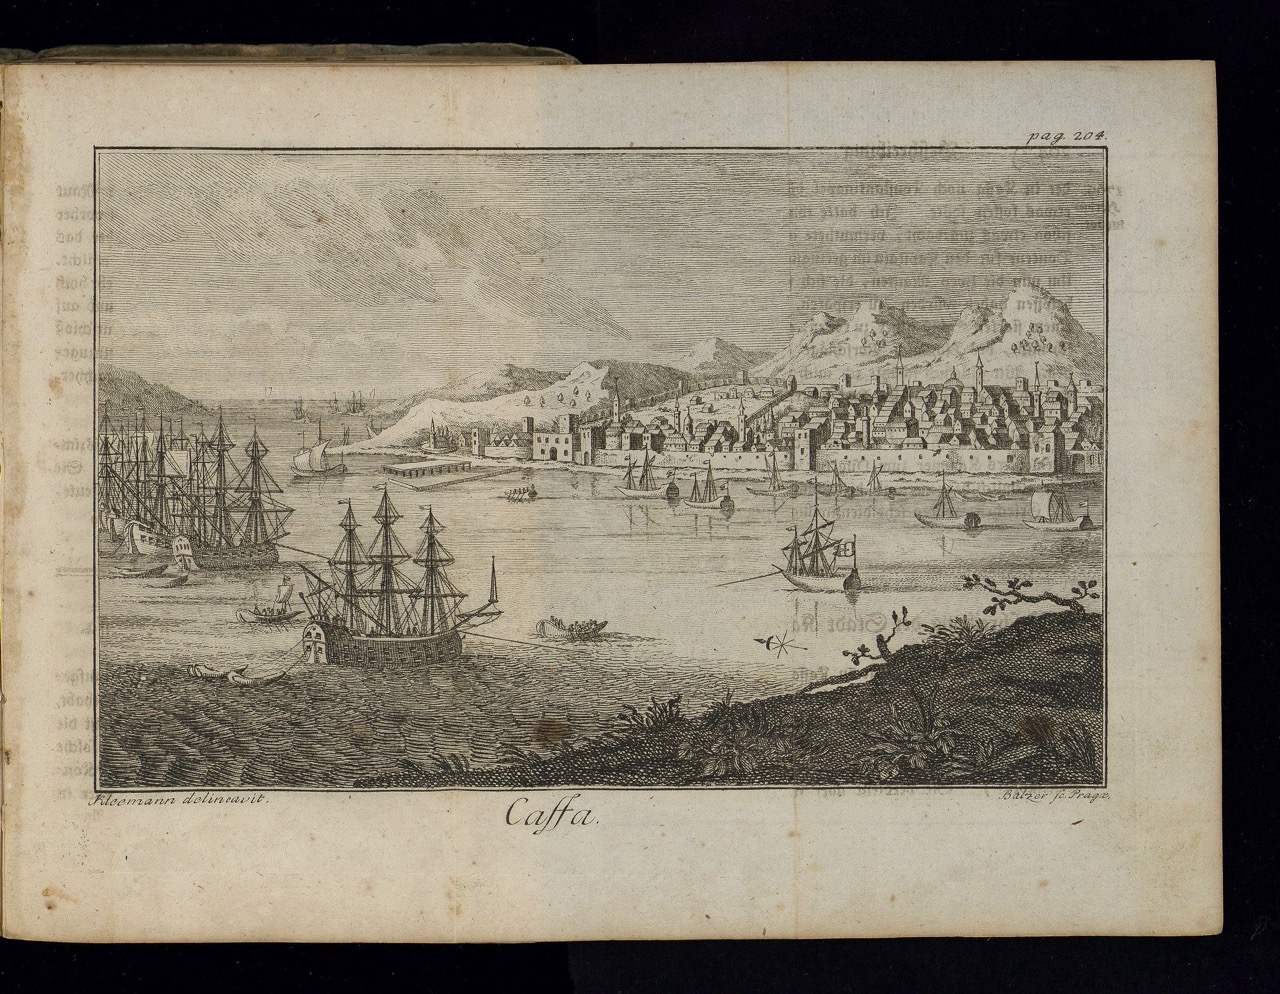 Kleemann: Tagebuch 1783, "Caffa"